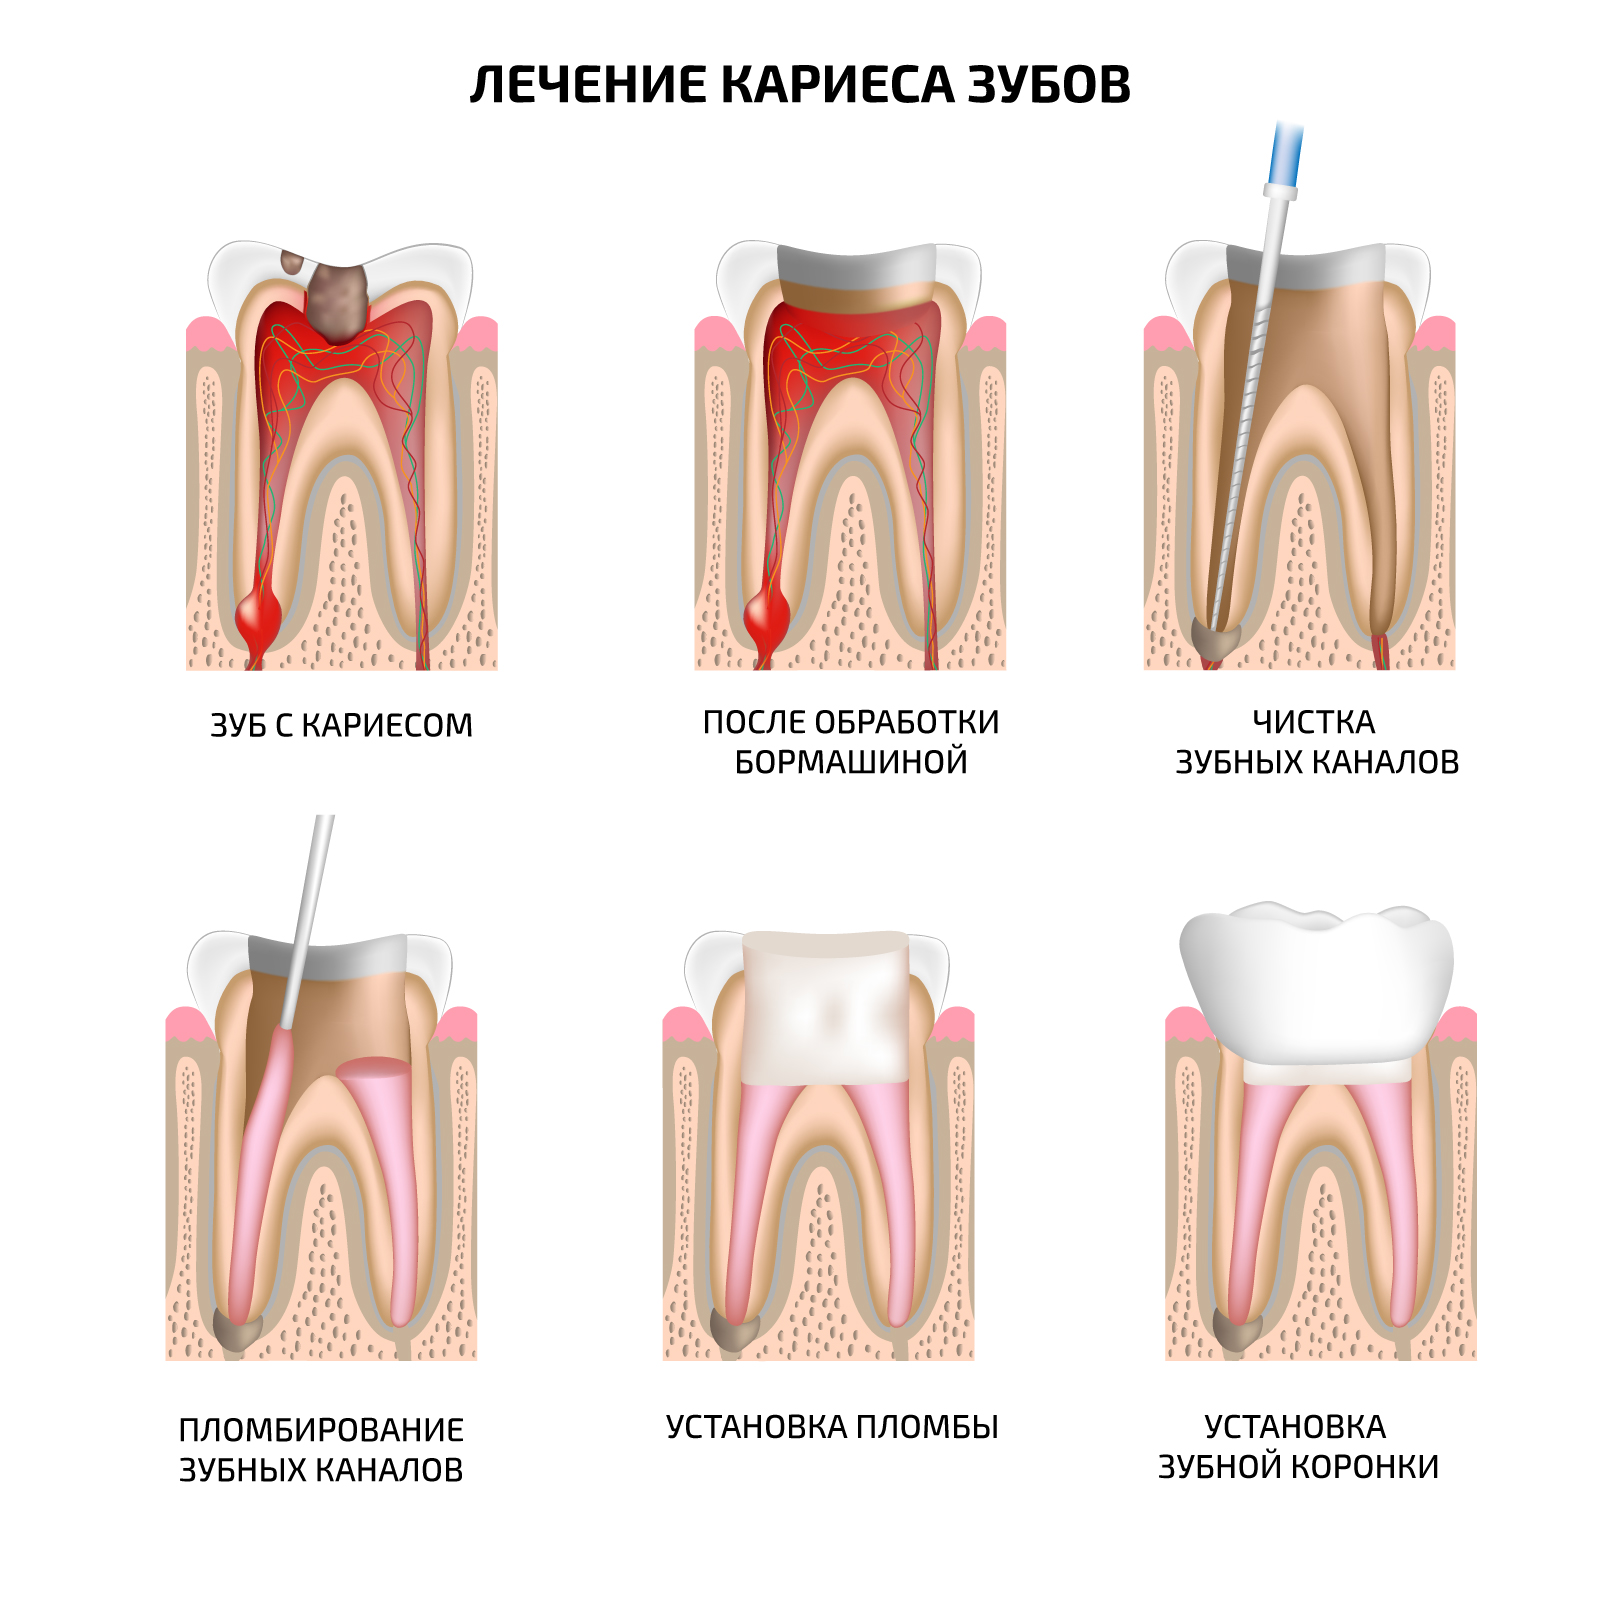 иллюстрация лечения кариеса, обработка зуба, чистка каналов и пломбирование